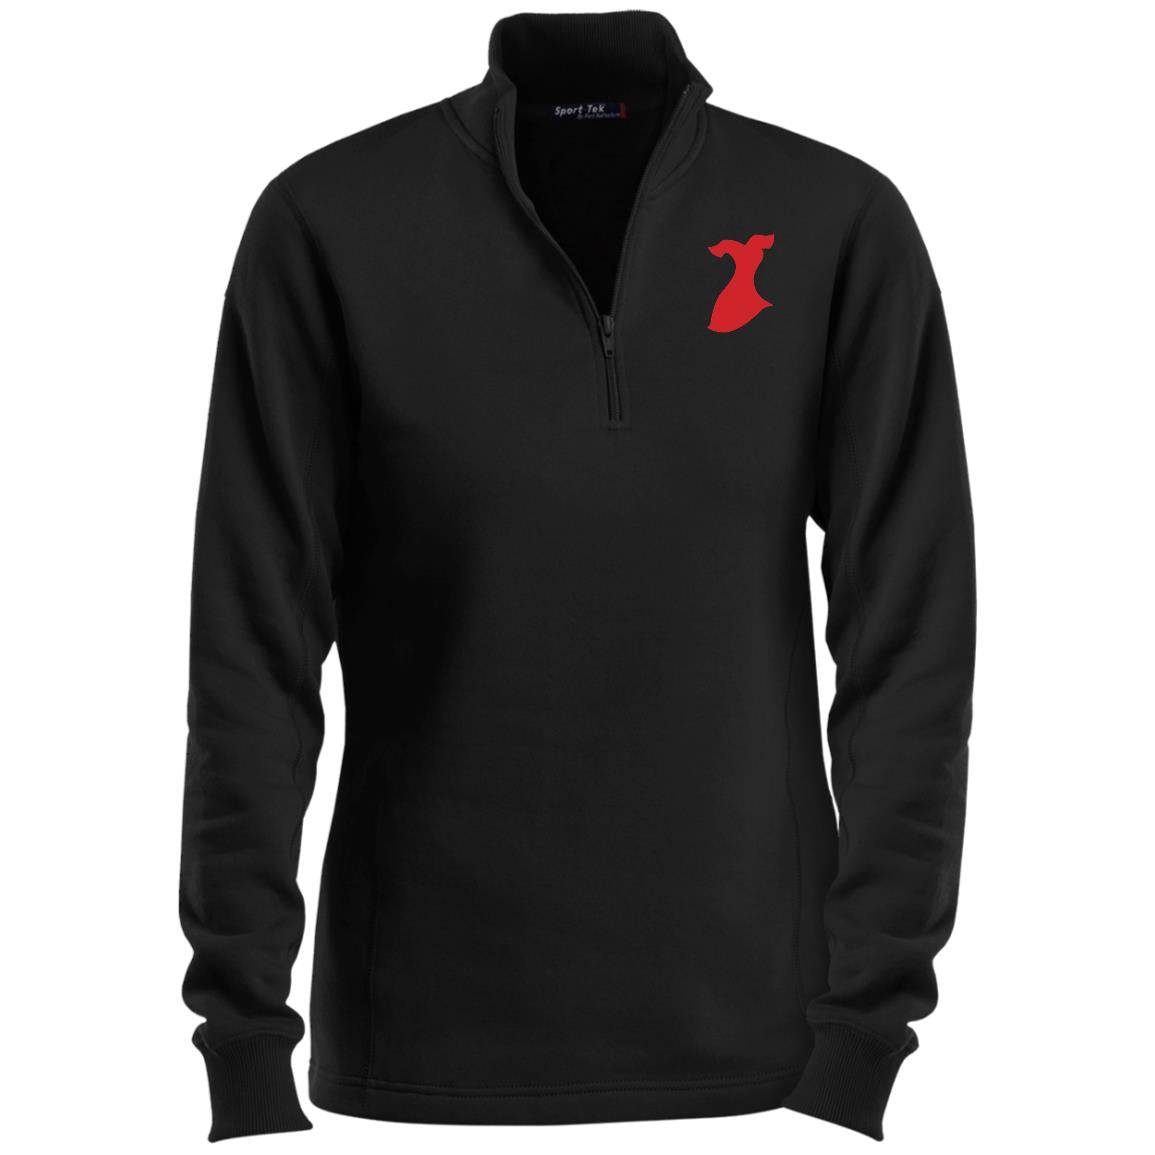 Go Red Ladies 1/4 Zip Sweatshirt